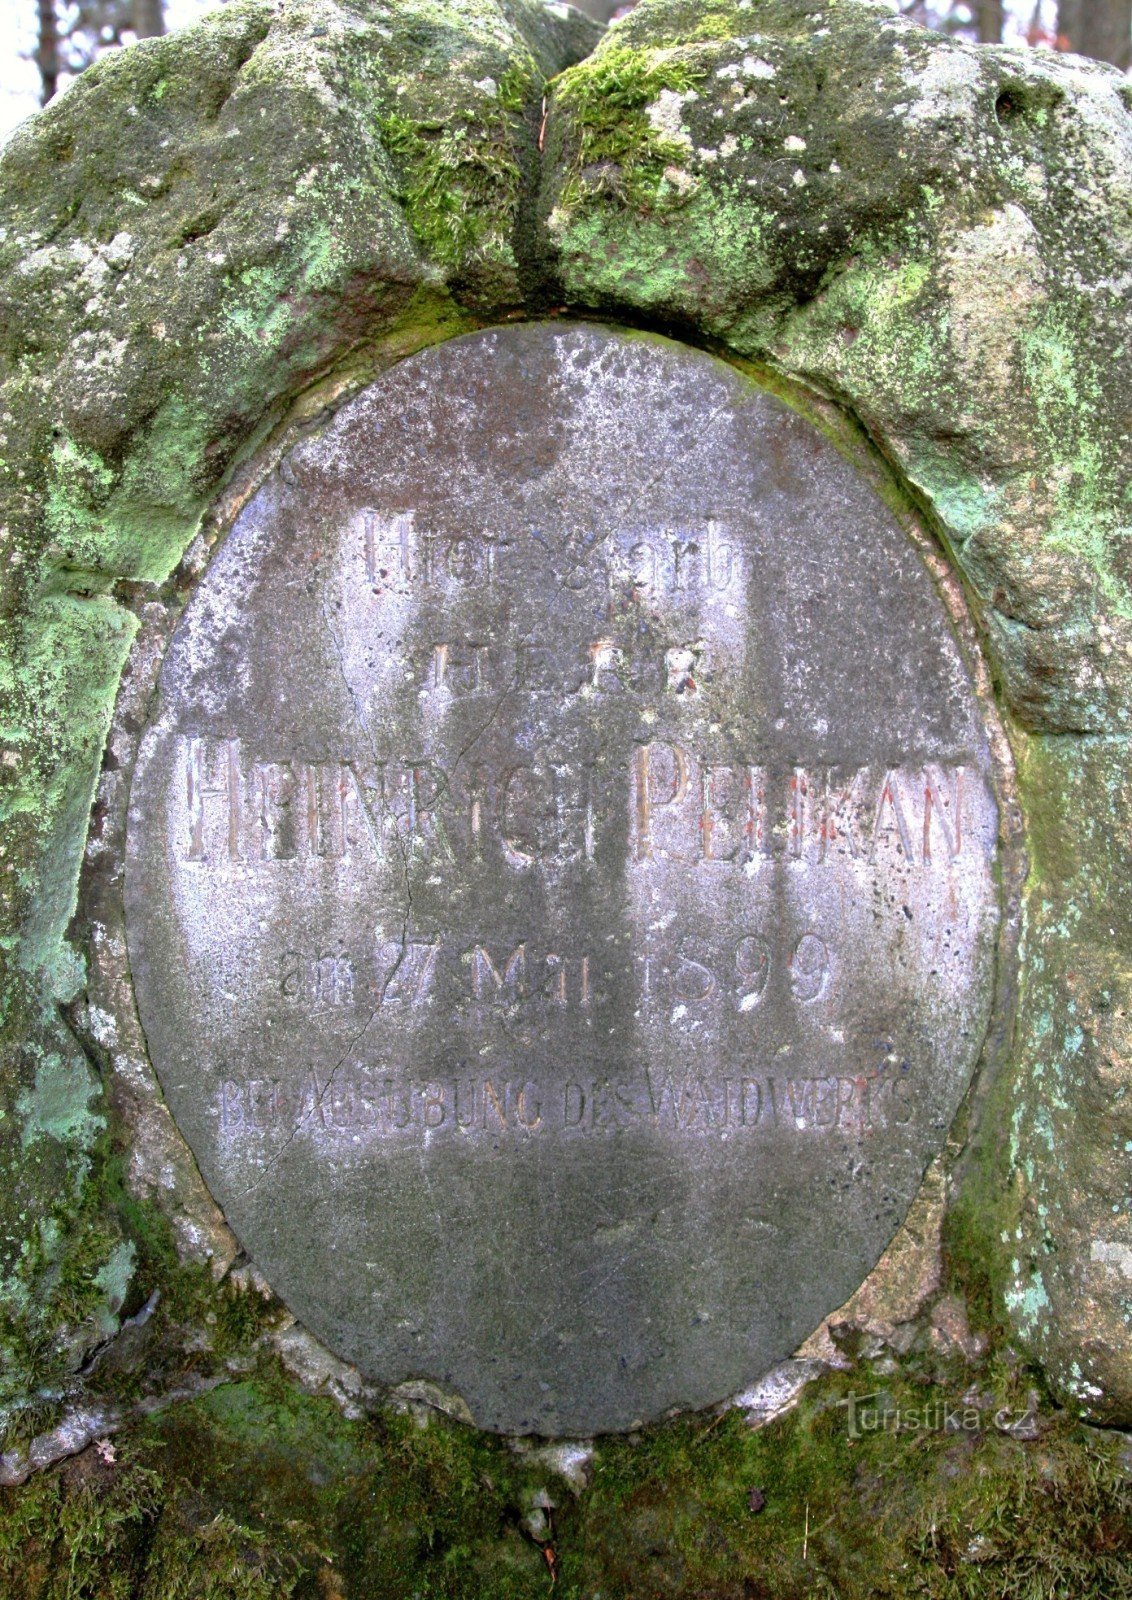 Detail van de inscriptie op het monument